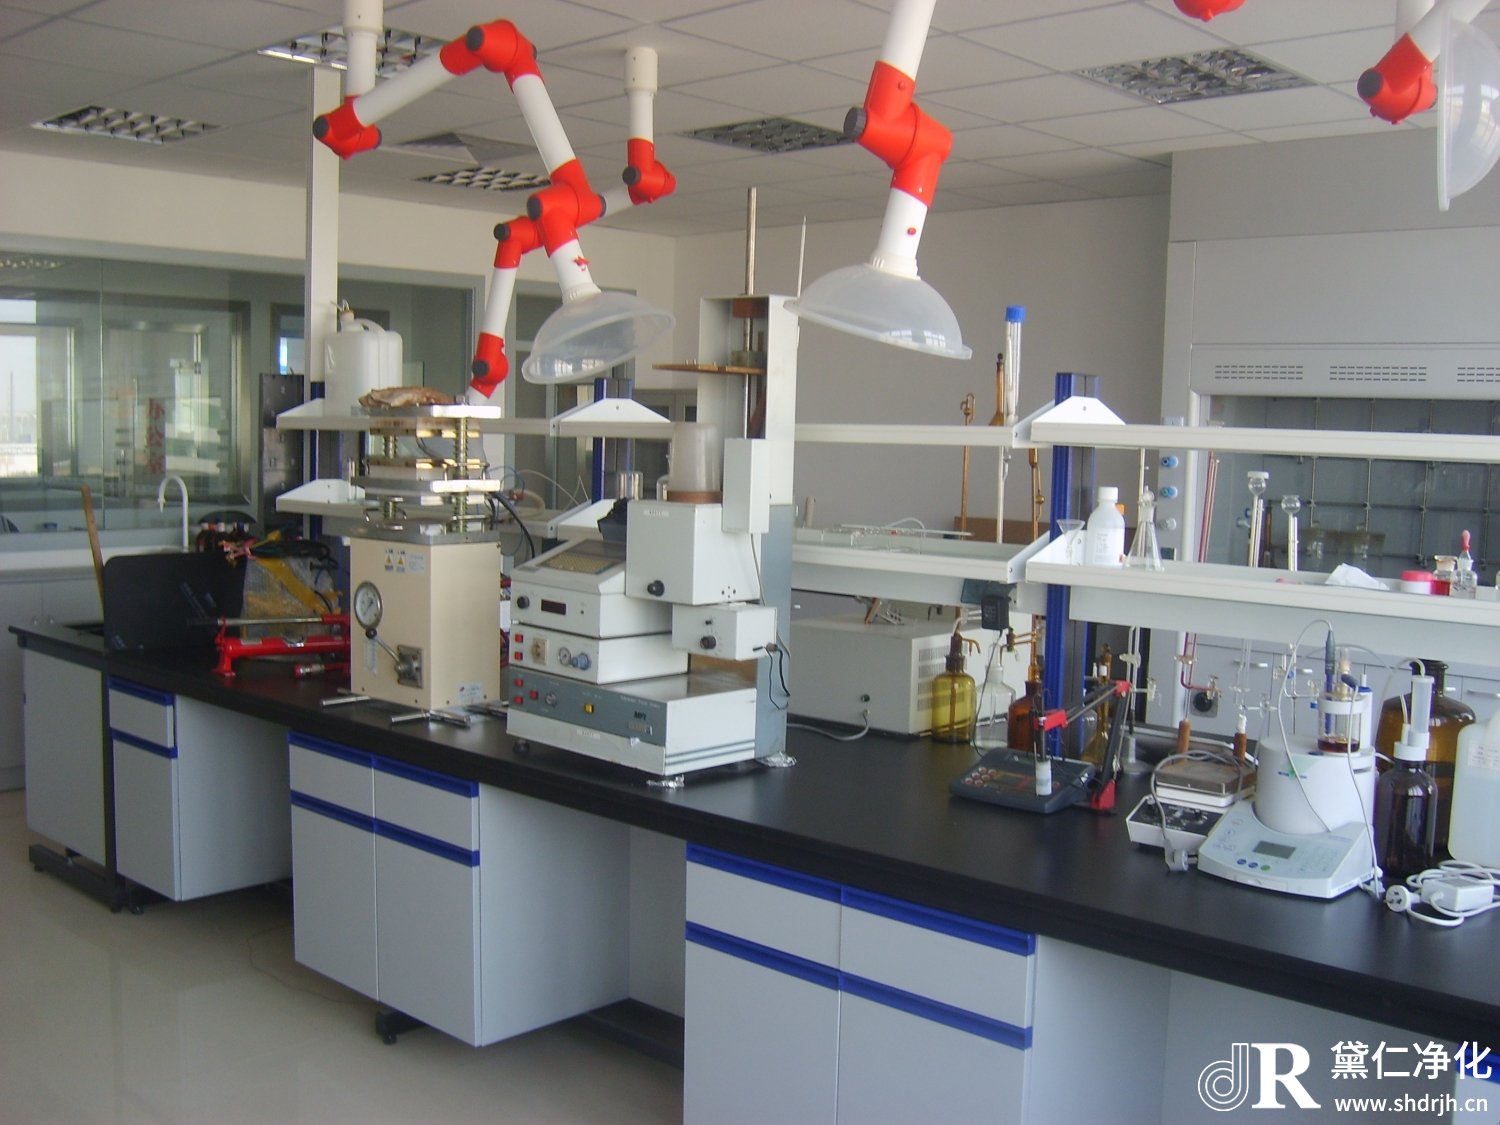 实验室装修在环境方面有几个要求？